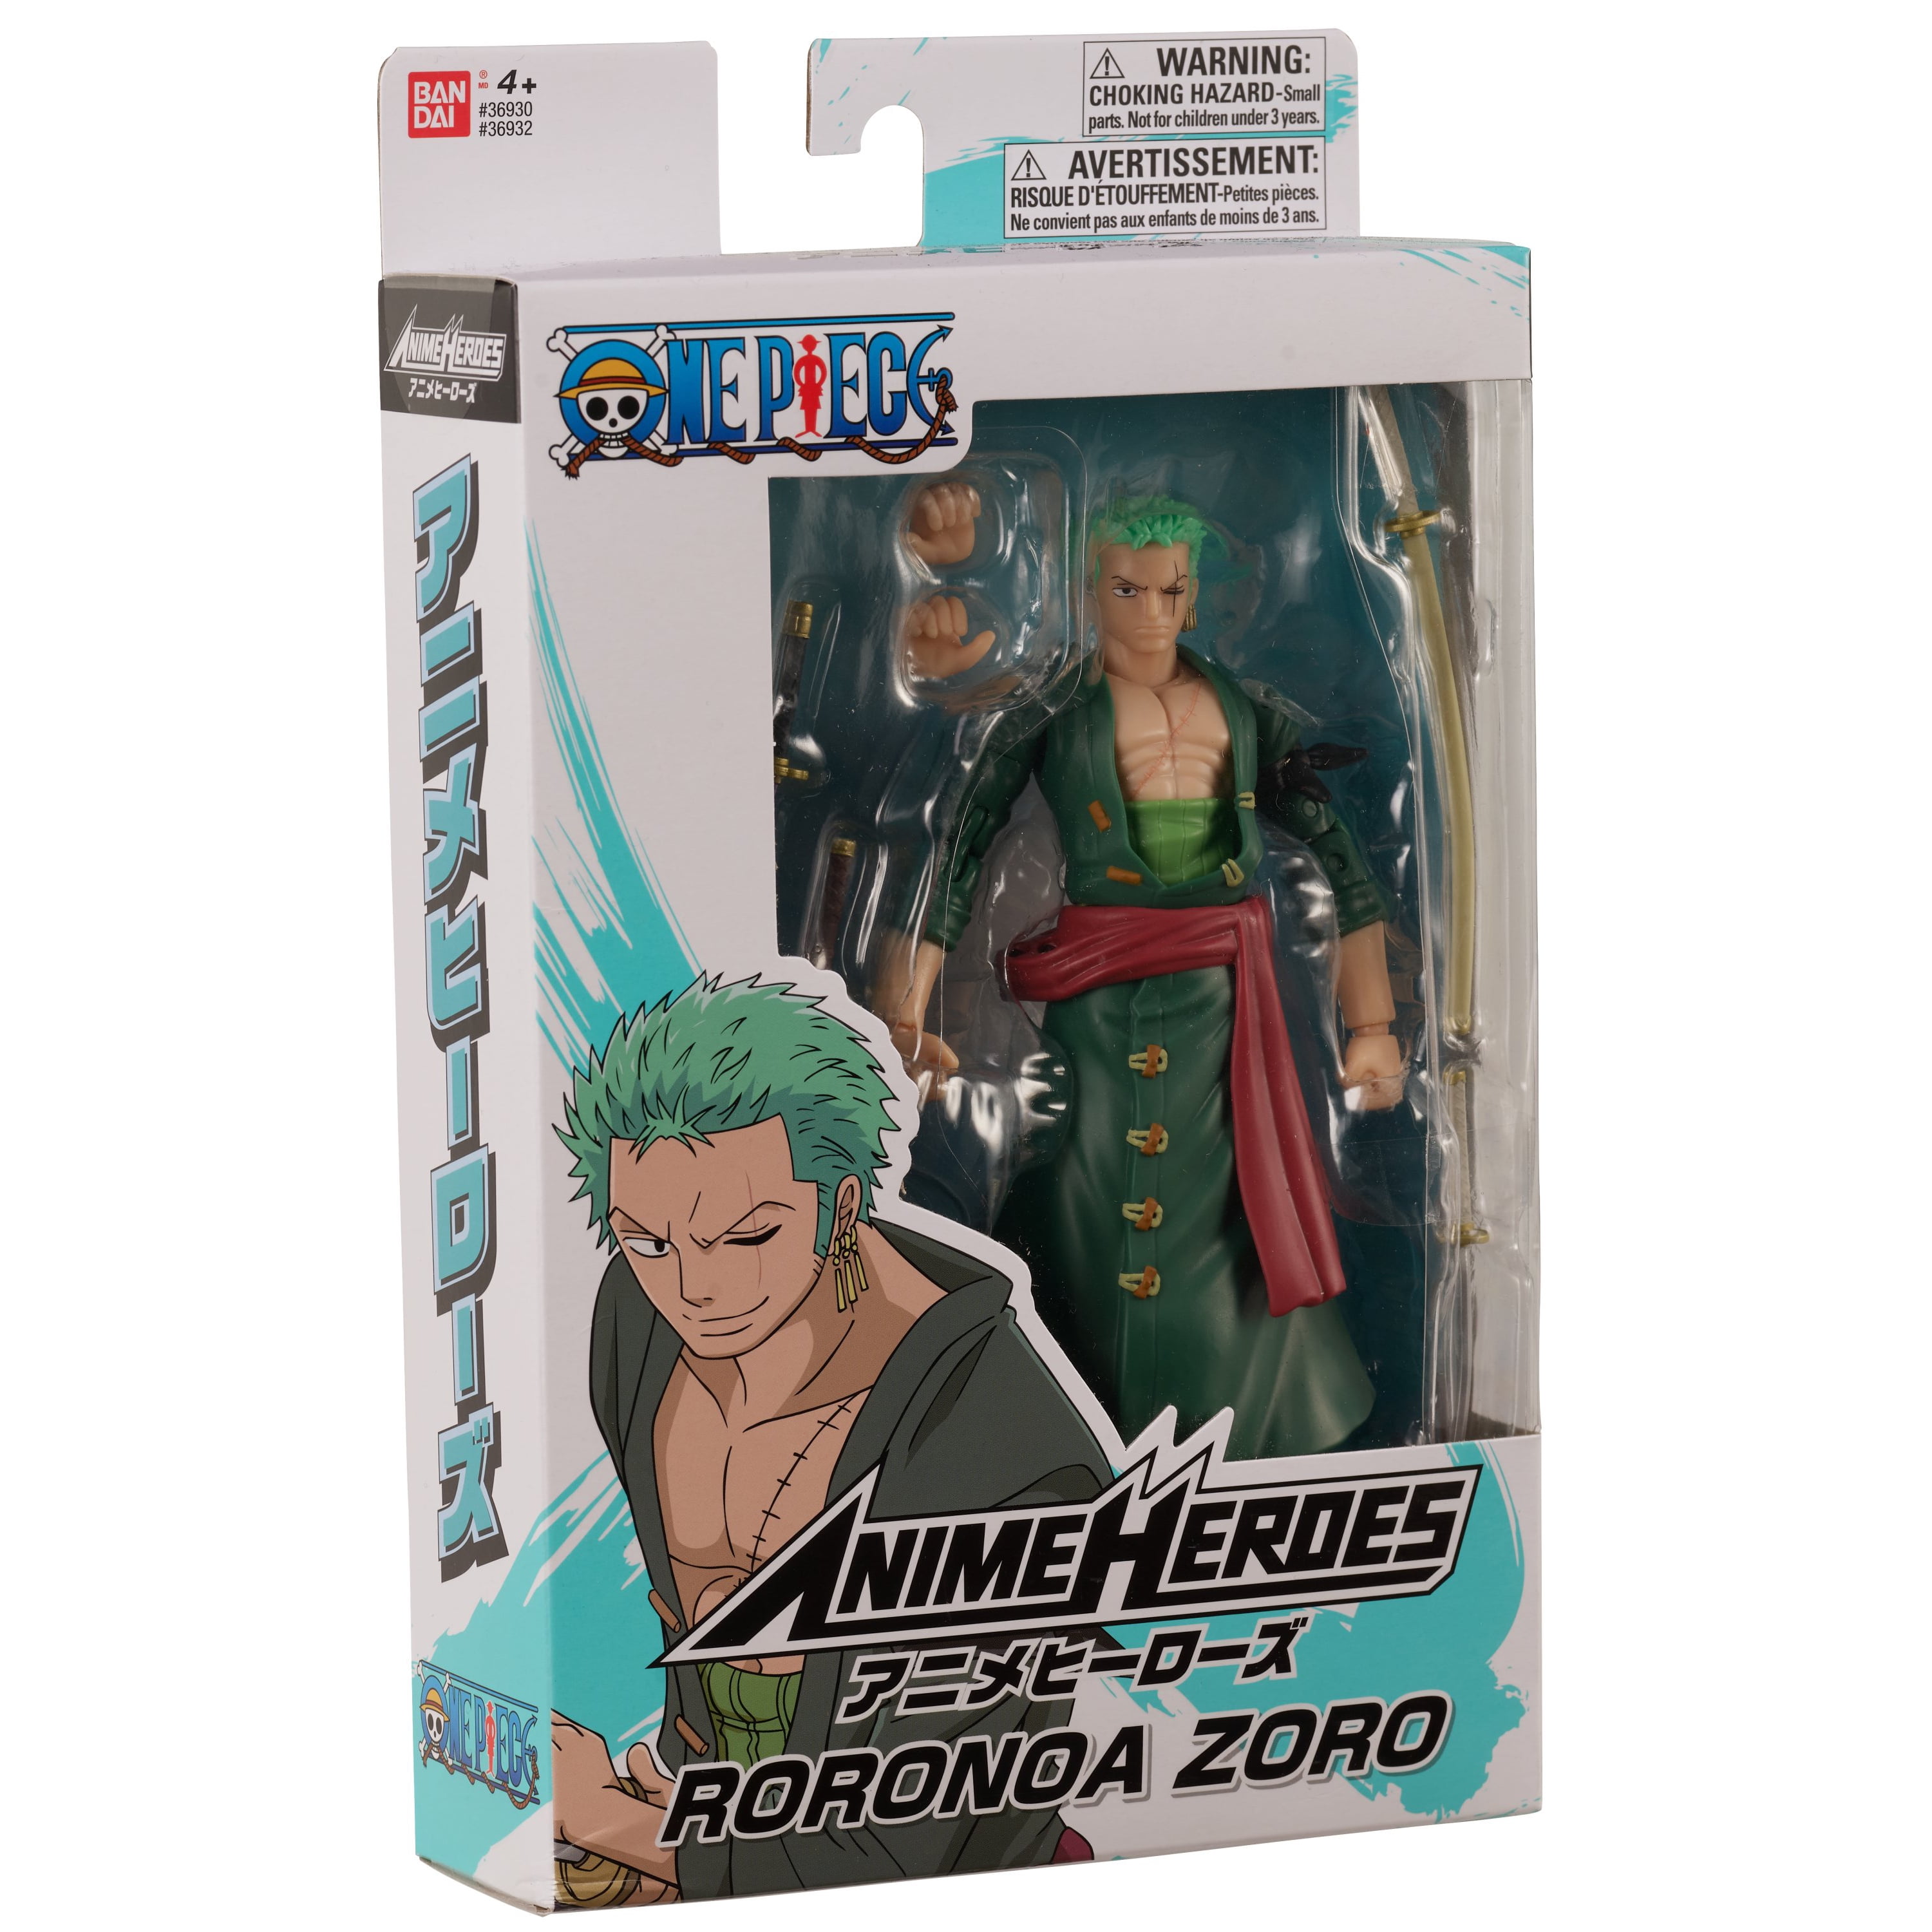 One Piece Figurine anime heroes - Roronoa Zoro 17cm